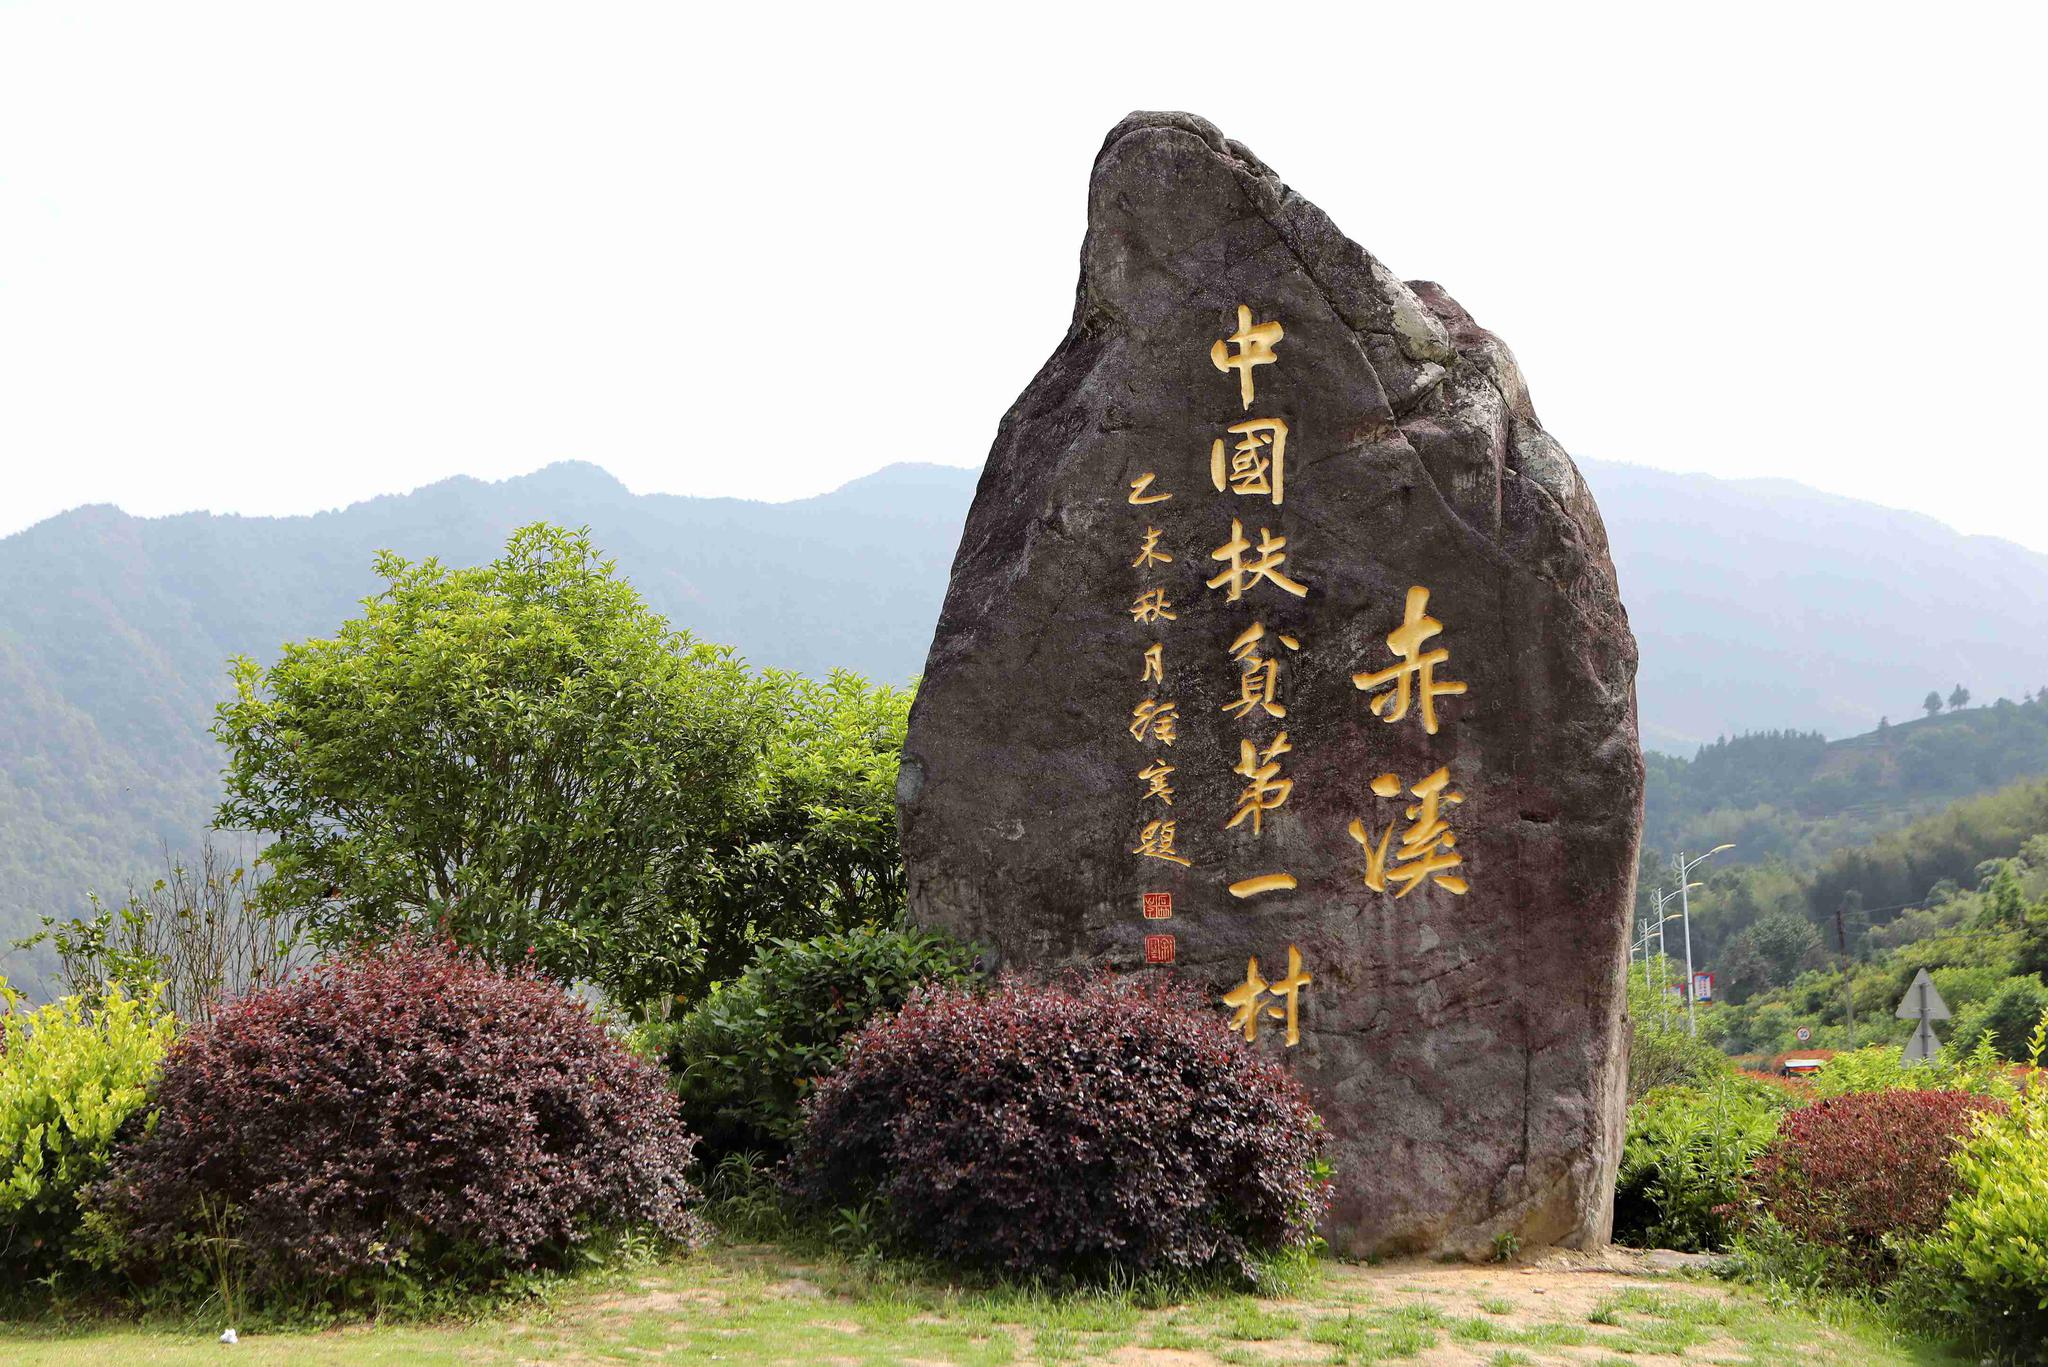 △这是赤溪村村民自发树立起的刻有“中国扶贫第一村”的石碑。